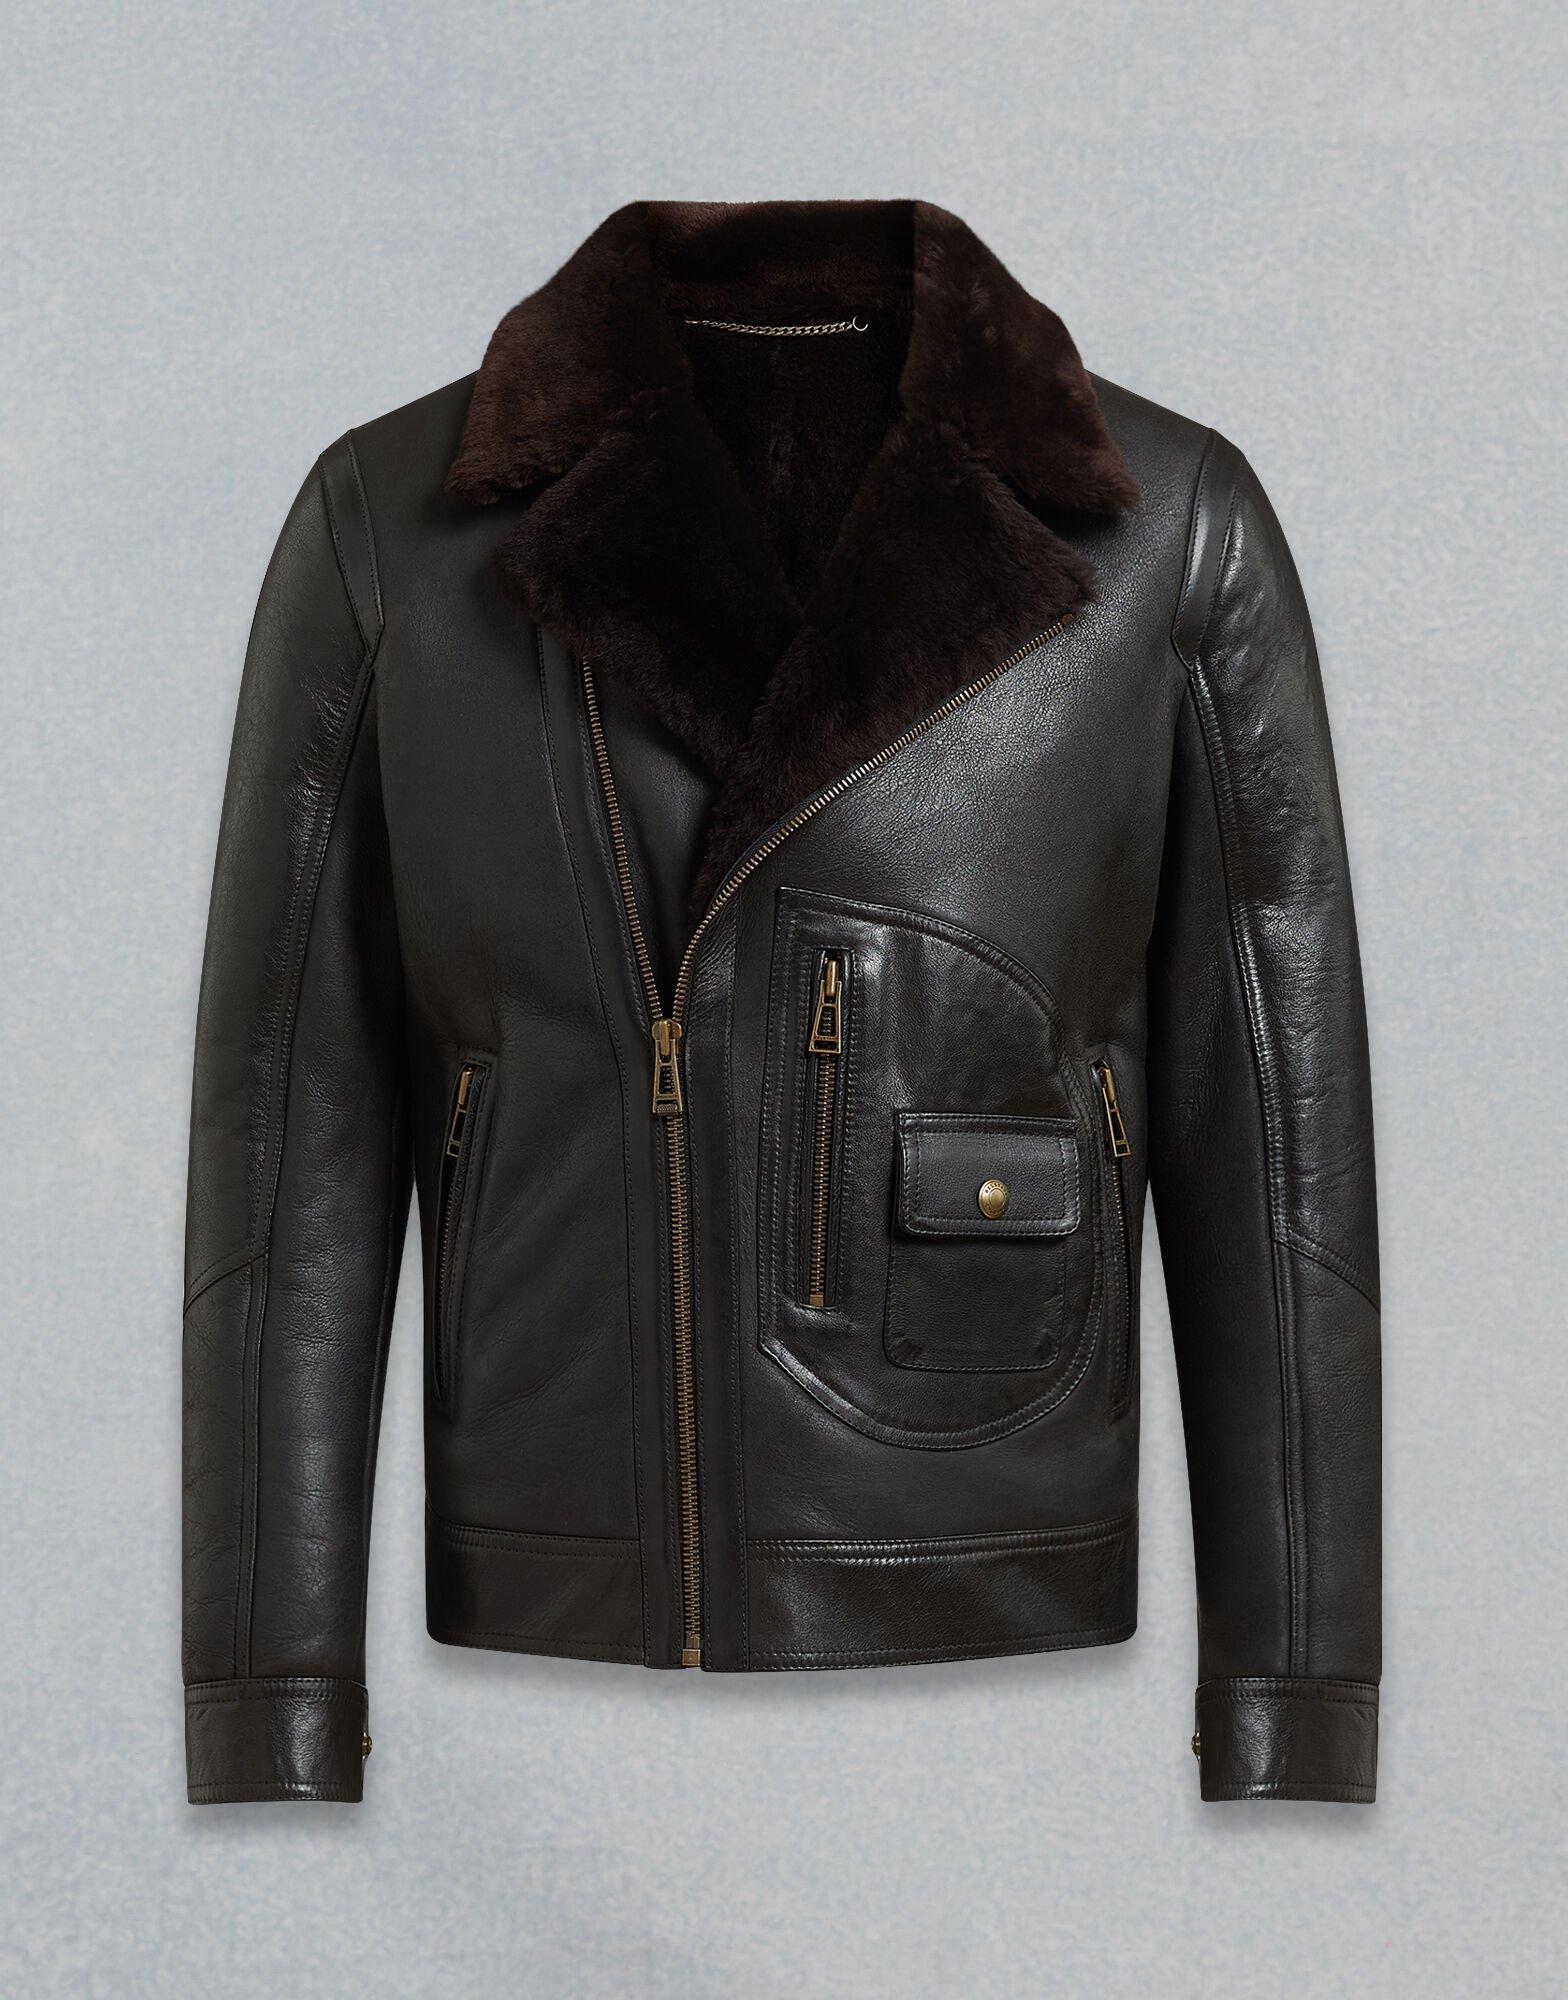 Belstaff Danescroft Leather Jacket in Black for Men - Lyst